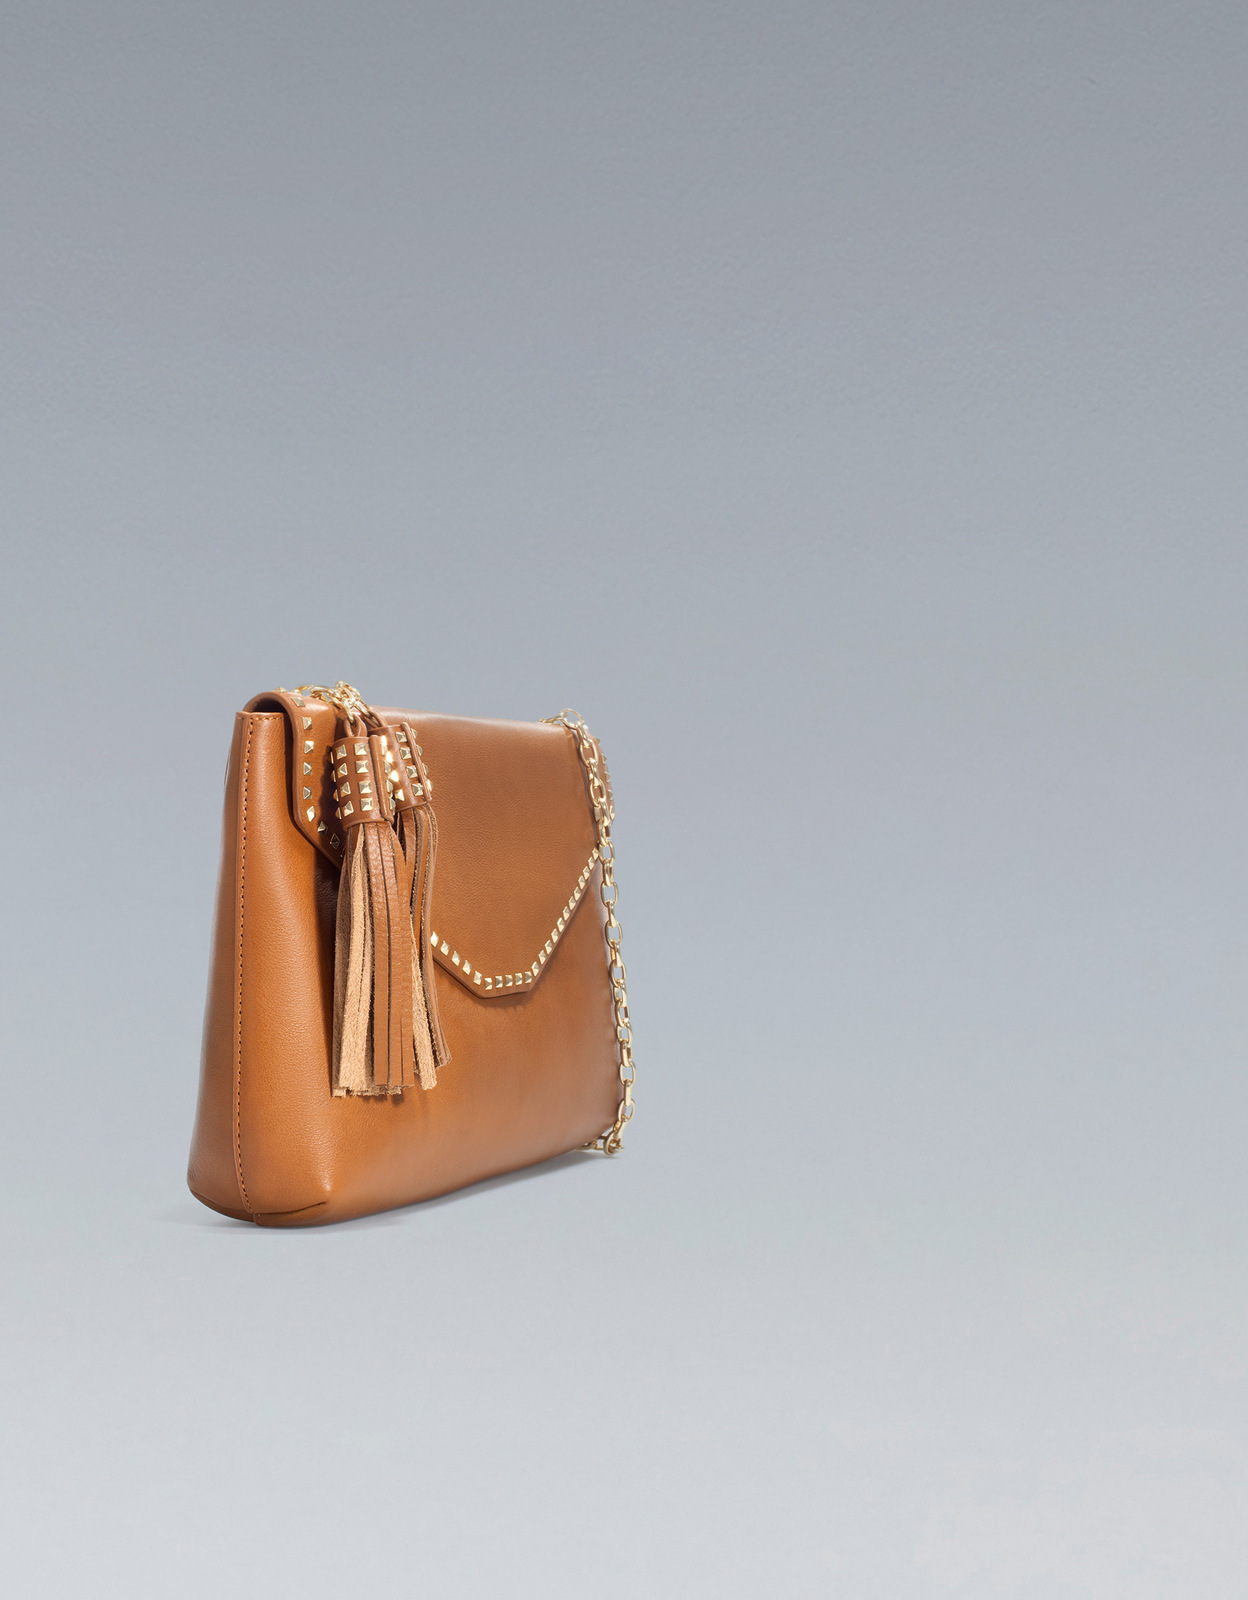 Zara láncos szegecses táska 2012 fotója